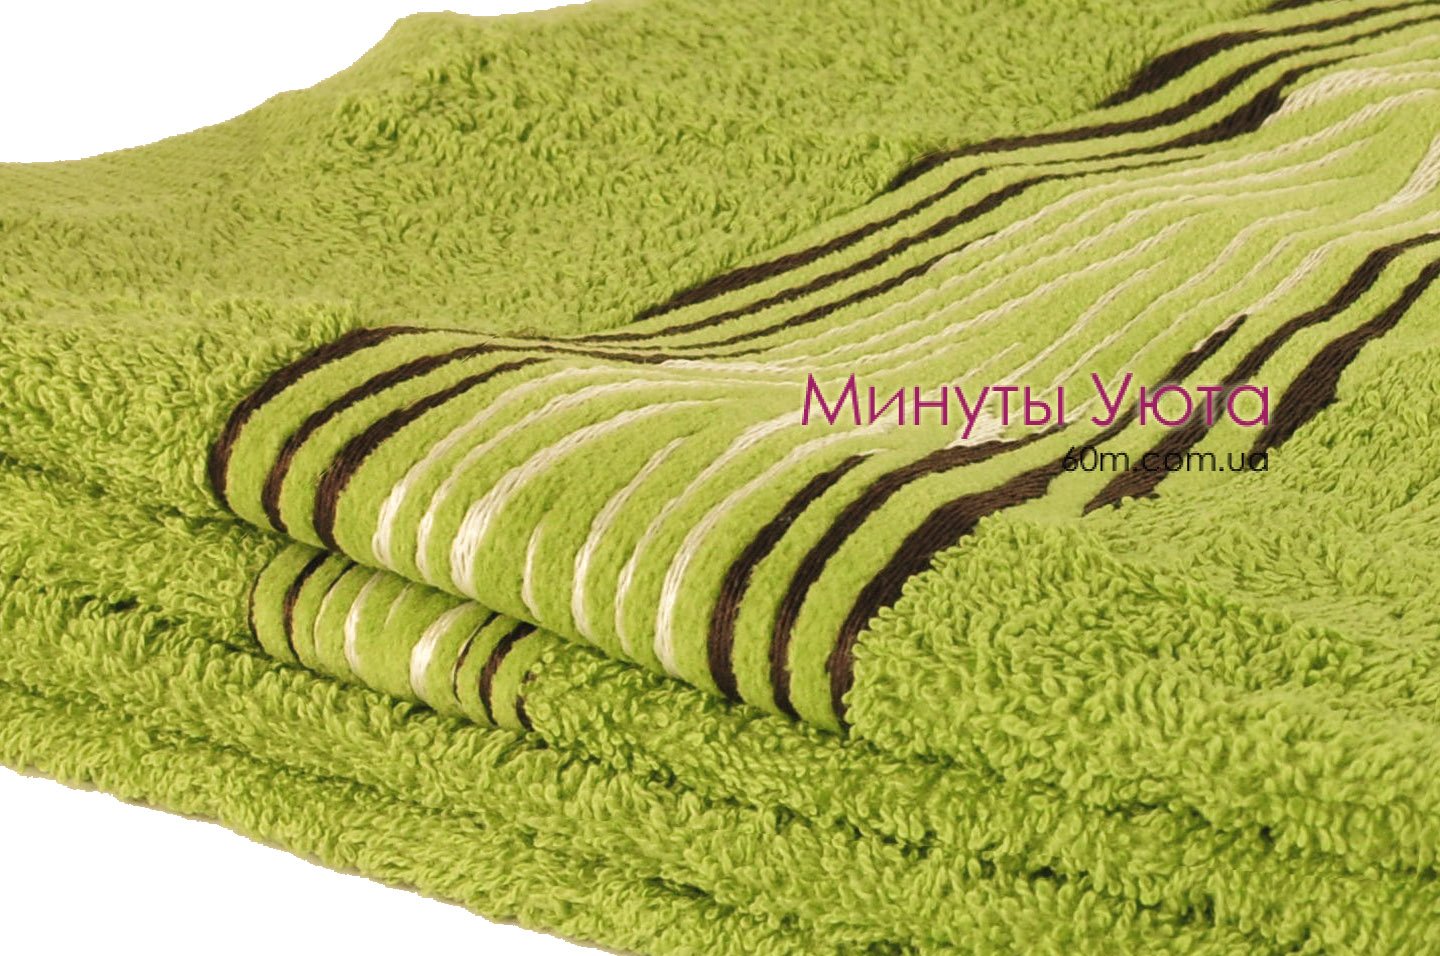 Махровое полотенце с полосатым кантом 